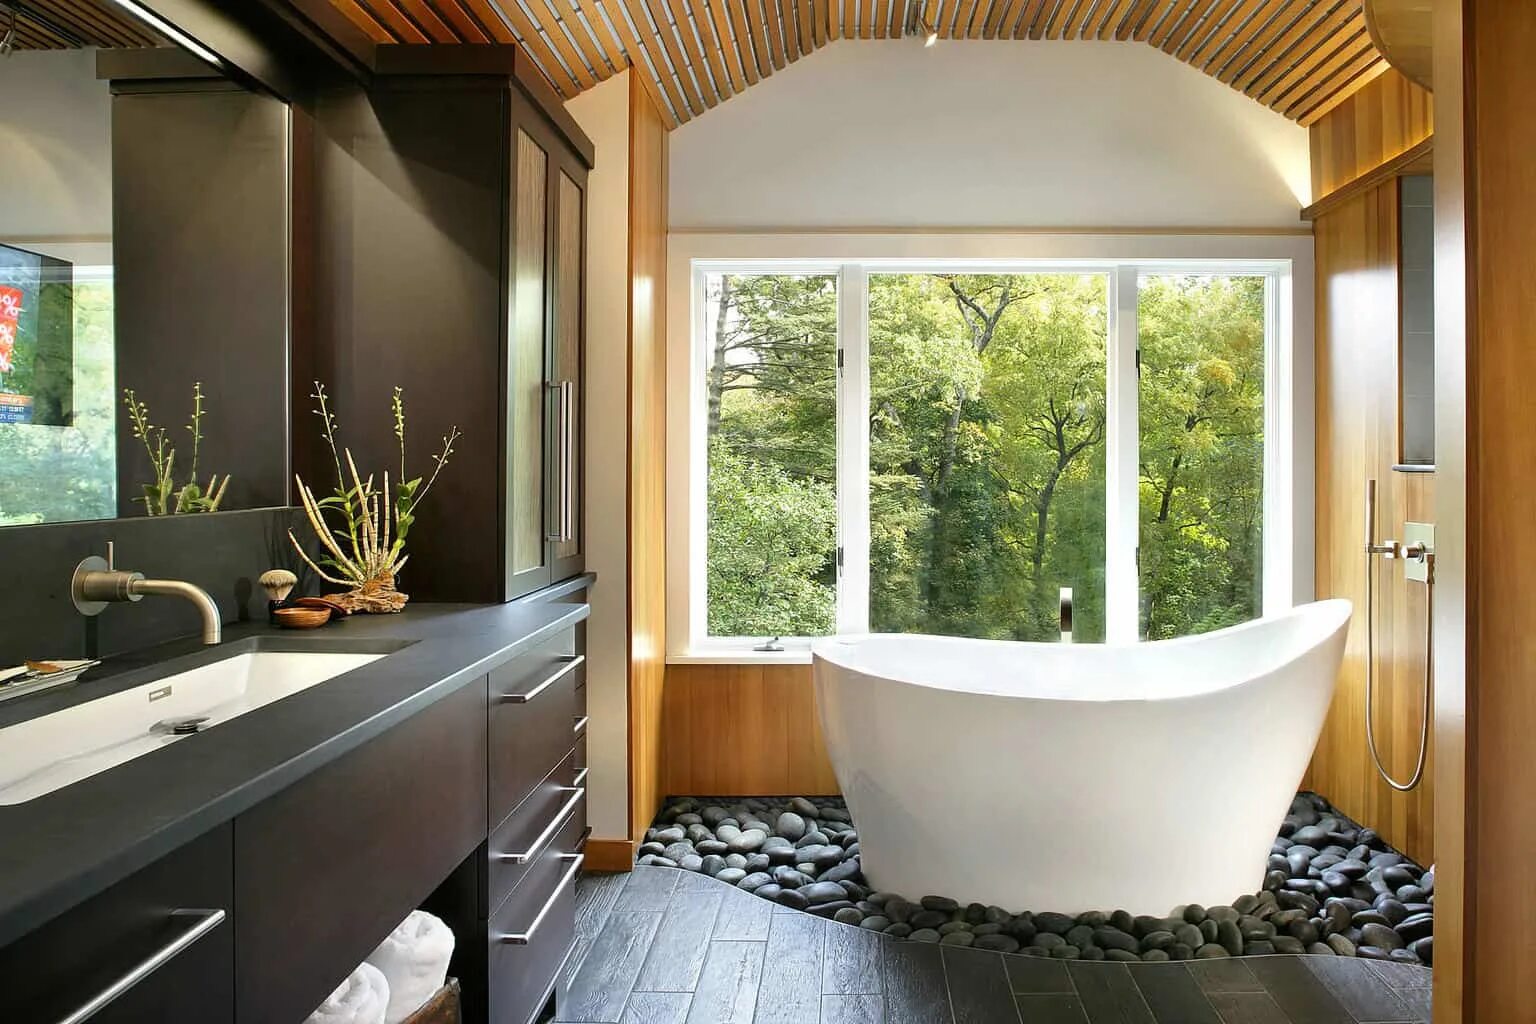 Ванная комната с окном. Интерьер ванной с окном. Небольшая ванная с окном. Ванная с панорамным окном.